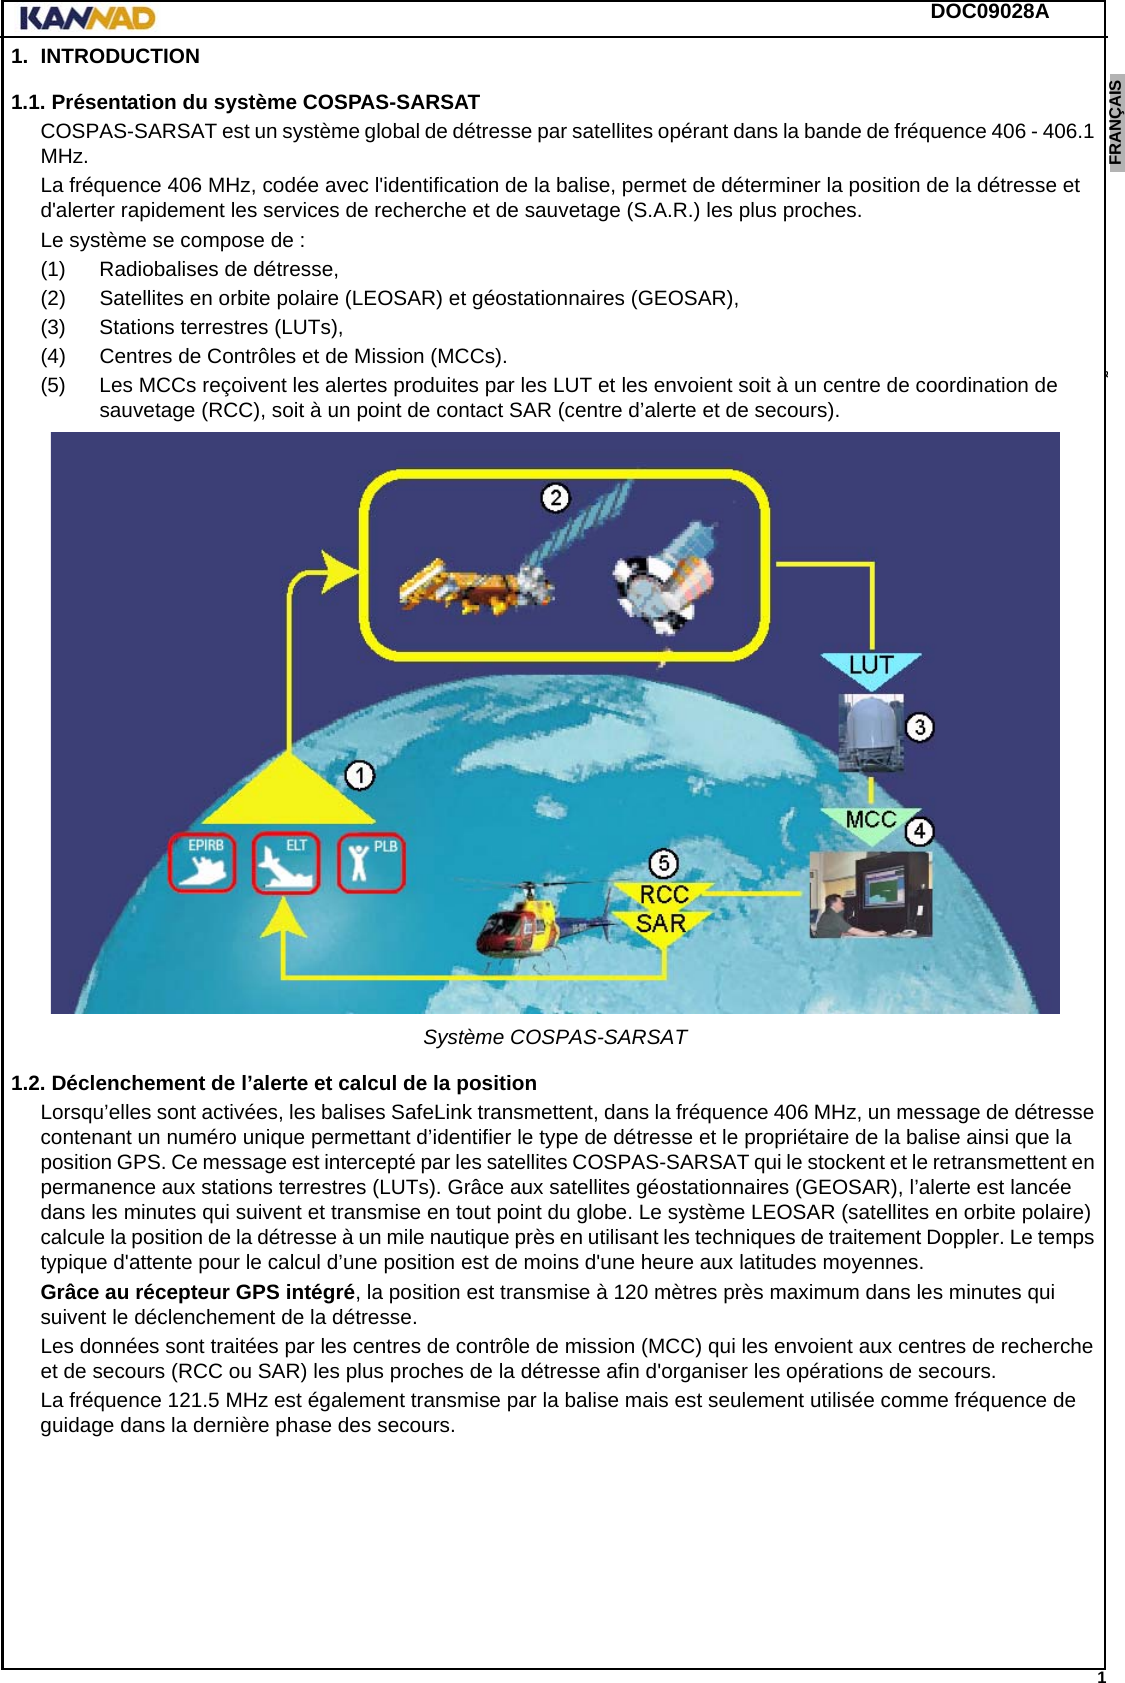 DOC09028A 1ENGLISH ESPAÑOL DEUTSCH  FRANÇAIS ITALIANO NEDERLANDS LANG7 LANG8 LANG9 LANG10 LANG11 LANG12 1. INTRODUCTION1.1. Présentation du système COSPAS-SARSATCOSPAS-SARSAT est un système global de détresse par satellites opérant dans la bande de fréquence 406 - 406.1 MHz.La fréquence 406 MHz, codée avec l&apos;identification de la balise, permet de déterminer la position de la détresse et d&apos;alerter rapidement les services de recherche et de sauvetage (S.A.R.) les plus proches.Le système se compose de :(1) Radiobalises de détresse,(2) Satellites en orbite polaire (LEOSAR) et géostationnaires (GEOSAR),(3) Stations terrestres (LUTs),(4) Centres de Contrôles et de Mission (MCCs).(5) Les MCCs reçoivent les alertes produites par les LUT et les envoient soit à un centre de coordination de sauvetage (RCC), soit à un point de contact SAR (centre d’alerte et de secours).Système COSPAS-SARSAT1.2. Déclenchement de l’alerte et calcul de la positionLorsqu’elles sont activées, les balises SafeLink transmettent, dans la fréquence 406 MHz, un message de détresse contenant un numéro unique permettant d’identifier le type de détresse et le propriétaire de la balise ainsi que la position GPS. Ce message est intercepté par les satellites COSPAS-SARSAT qui le stockent et le retransmettent en permanence aux stations terrestres (LUTs). Grâce aux satellites géostationnaires (GEOSAR), l’alerte est lancée dans les minutes qui suivent et transmise en tout point du globe. Le système LEOSAR (satellites en orbite polaire) calcule la position de la détresse à un mile nautique près en utilisant les techniques de traitement Doppler. Le temps typique d&apos;attente pour le calcul d’une position est de moins d&apos;une heure aux latitudes moyennes.Grâce au récepteur GPS intégré, la position est transmise à 120 mètres près maximum dans les minutes qui suivent le déclenchement de la détresse.Les données sont traitées par les centres de contrôle de mission (MCC) qui les envoient aux centres de recherche et de secours (RCC ou SAR) les plus proches de la détresse afin d&apos;organiser les opérations de secours.La fréquence 121.5 MHz est également transmise par la balise mais est seulement utilisée comme fréquence de guidage dans la dernière phase des secours.